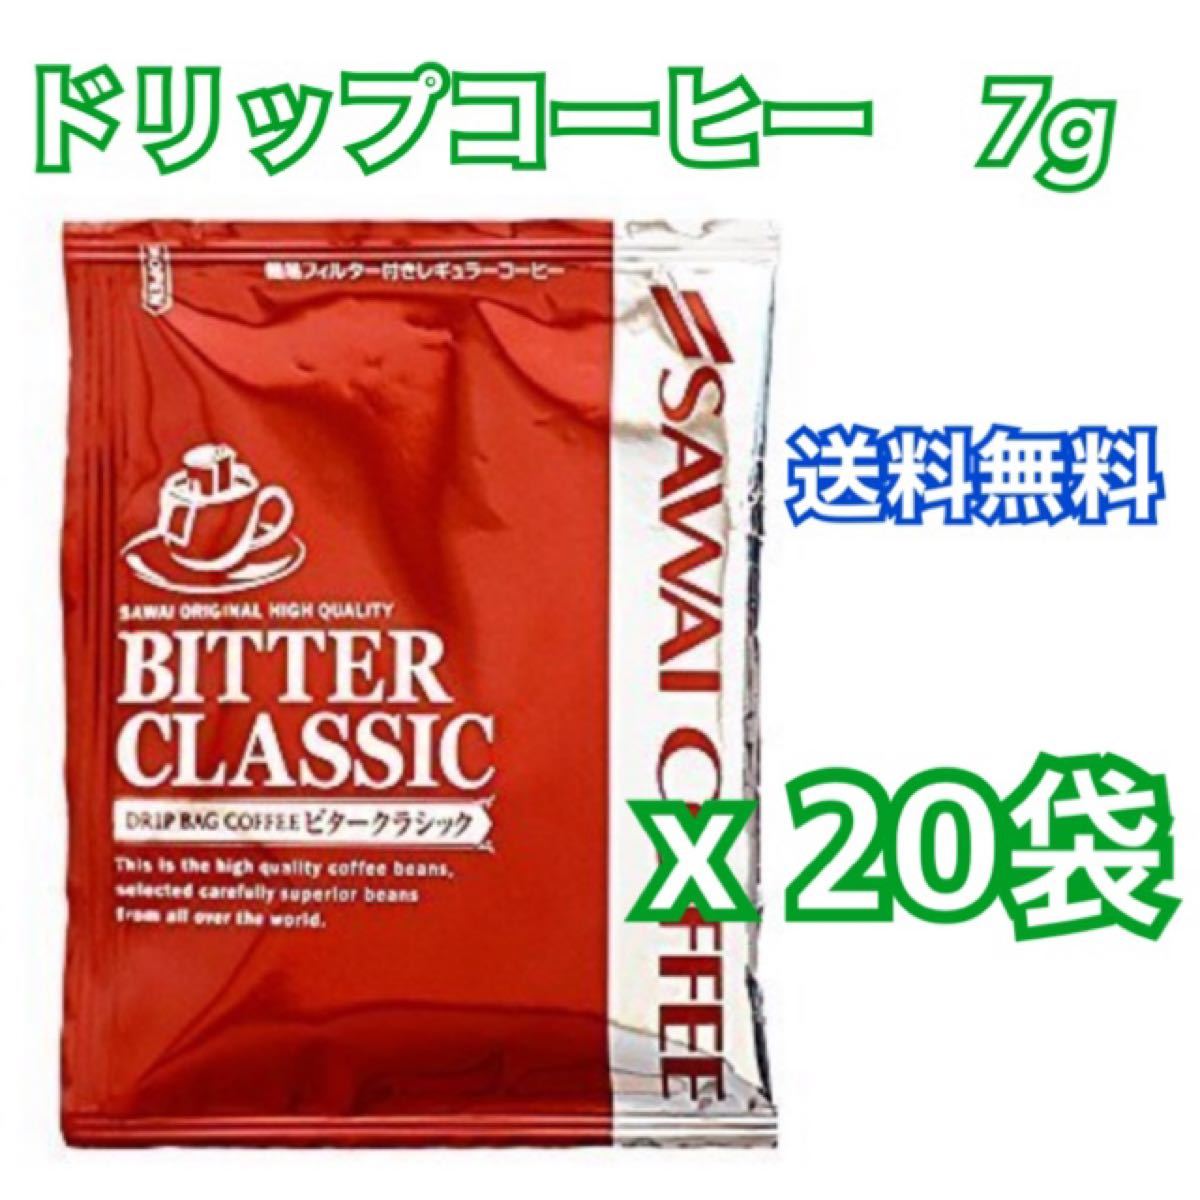 ドリップバッグコーヒー　(澤井珈琲) 7g x 20袋